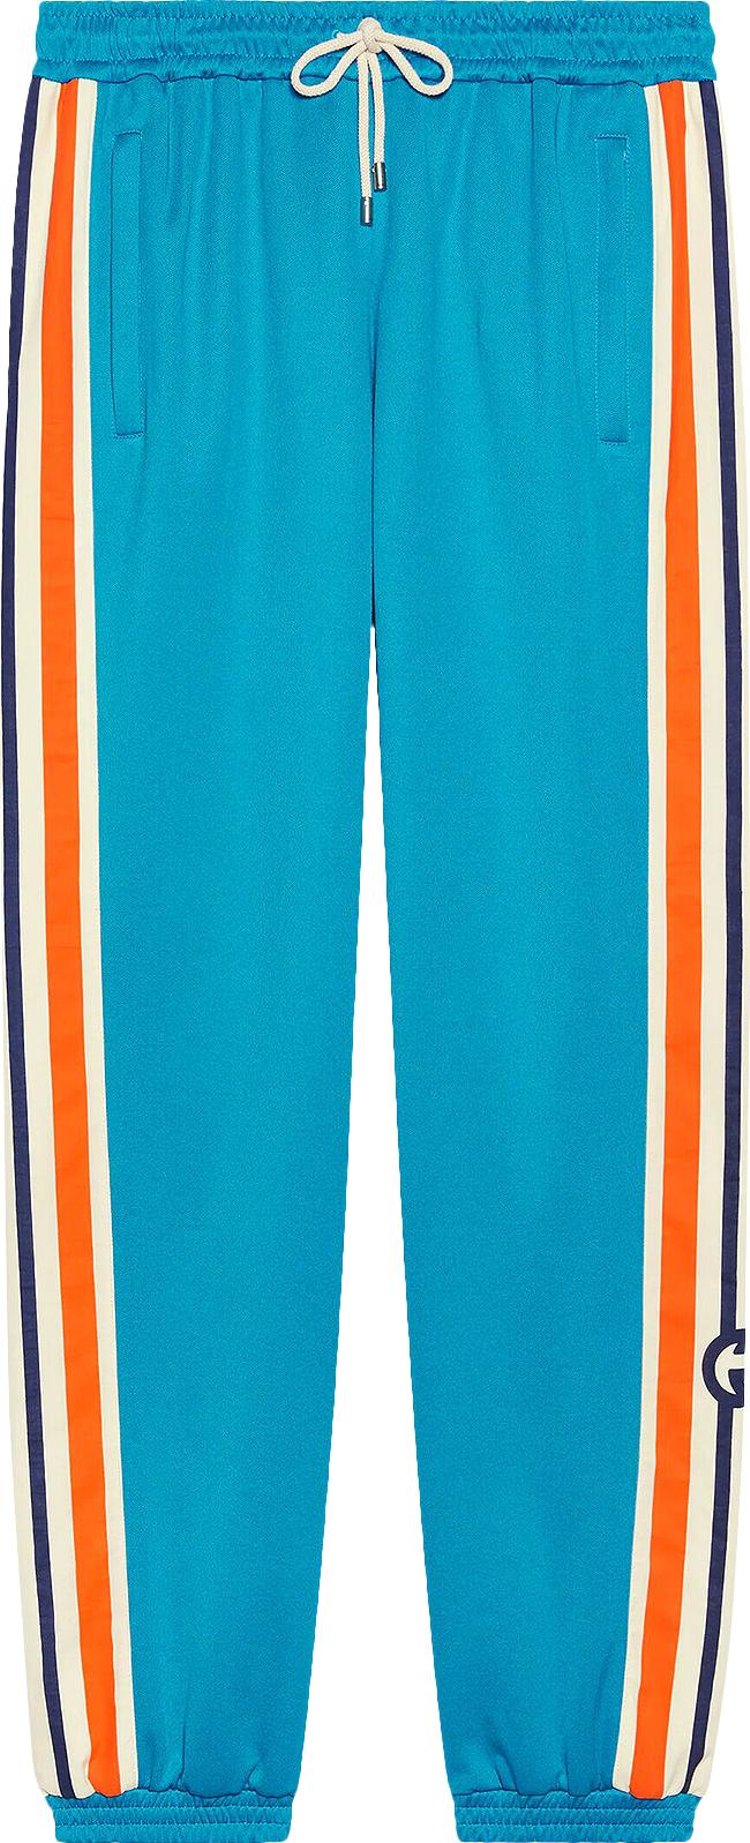 Gucci Interlocking G Jogging Pant 'Blue/Orange'